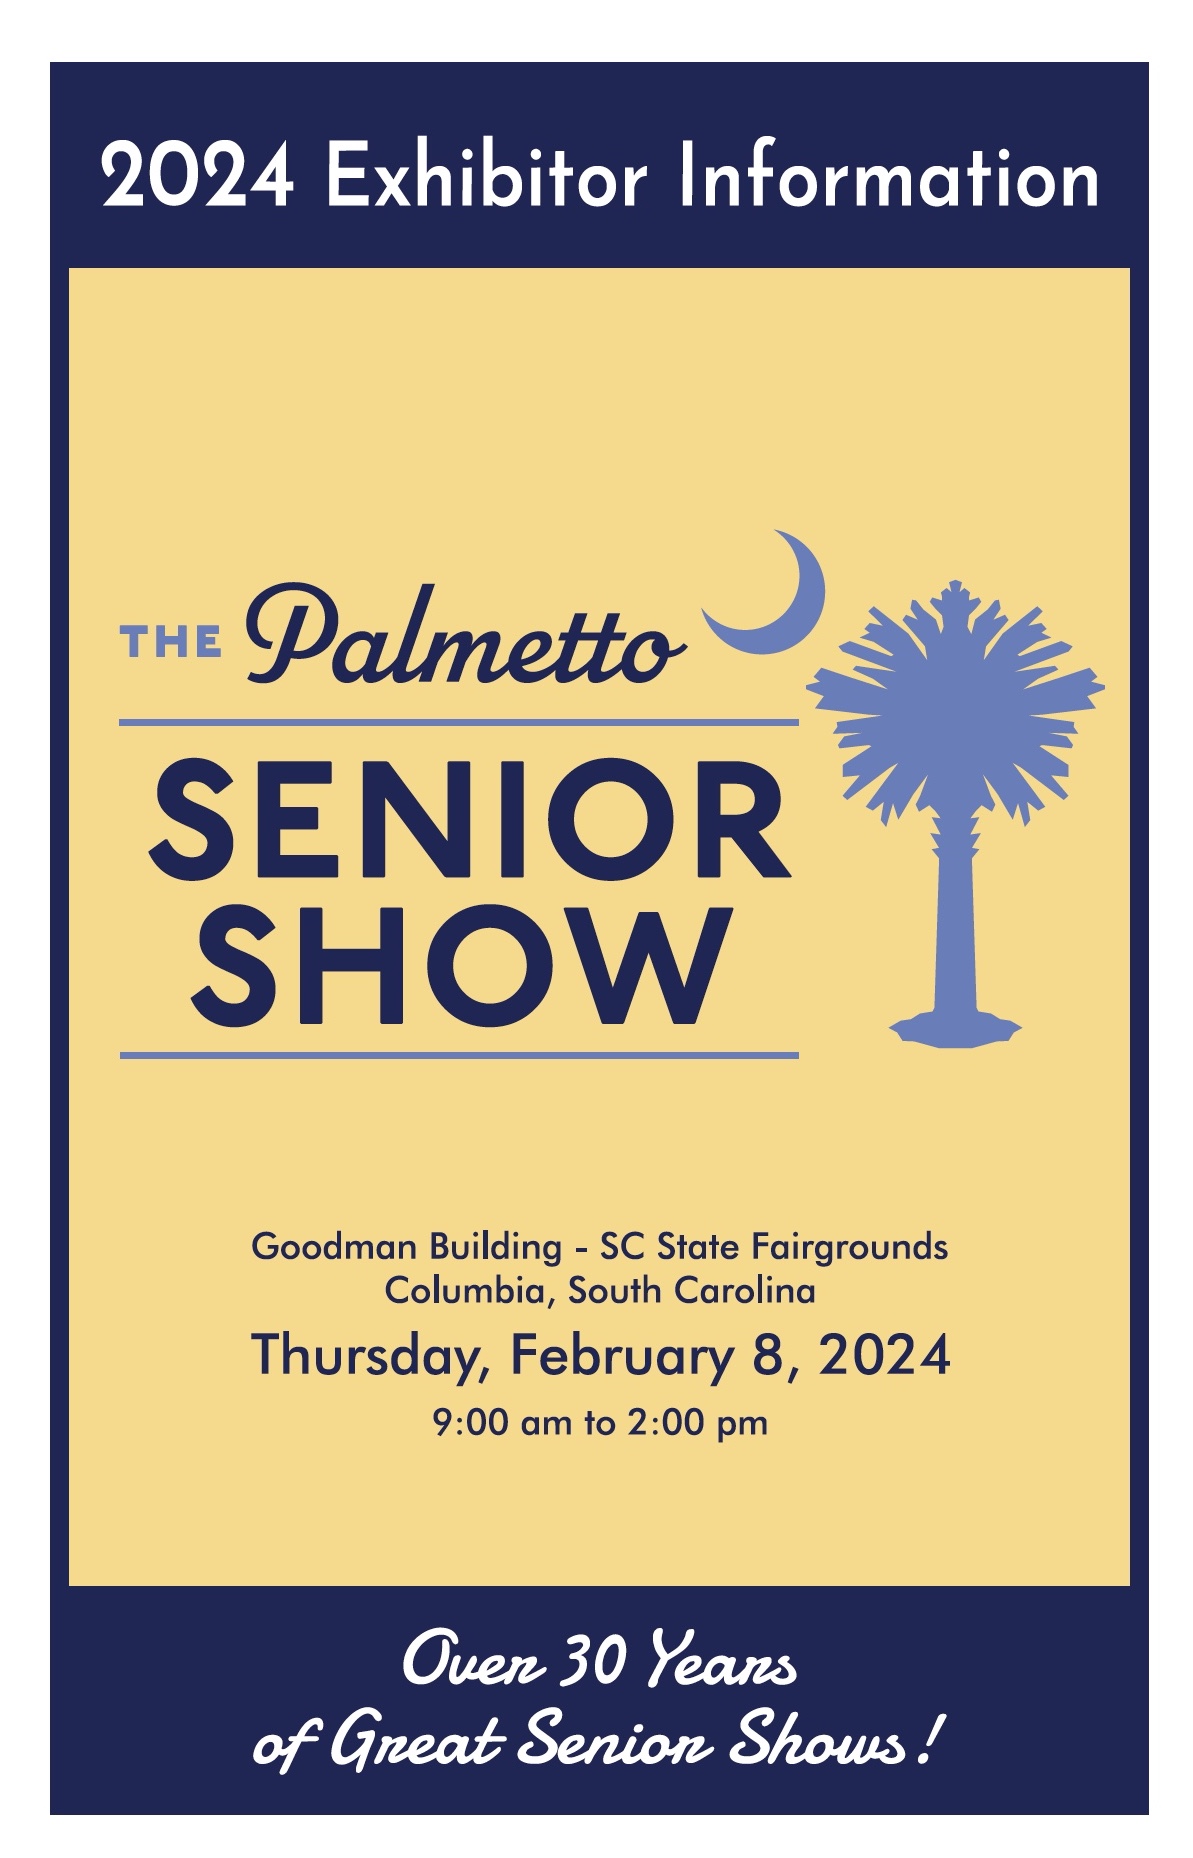 Palmetto Senior Show, Columbia, Lexington, South Carolina, Seniors, Fairgrounds, Rosewood, Carolina, USC, Aging, Disabled,